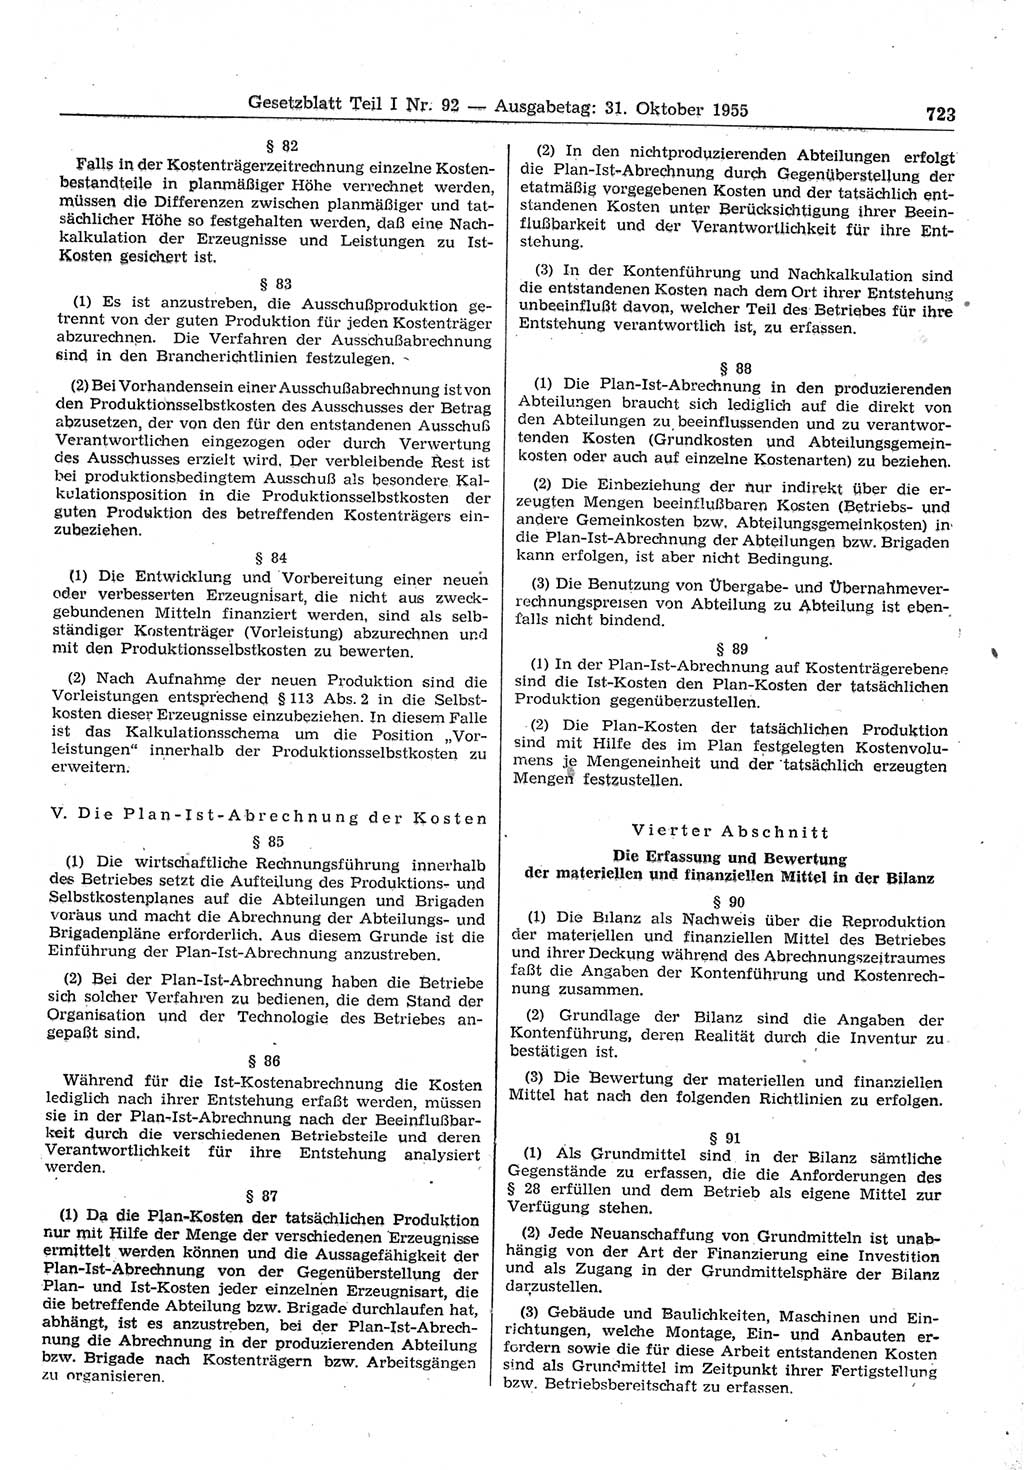 Gesetzblatt (GBl.) der Deutschen Demokratischen Republik (DDR) Teil Ⅰ 1955, Seite 723 (GBl. DDR Ⅰ 1955, S. 723)